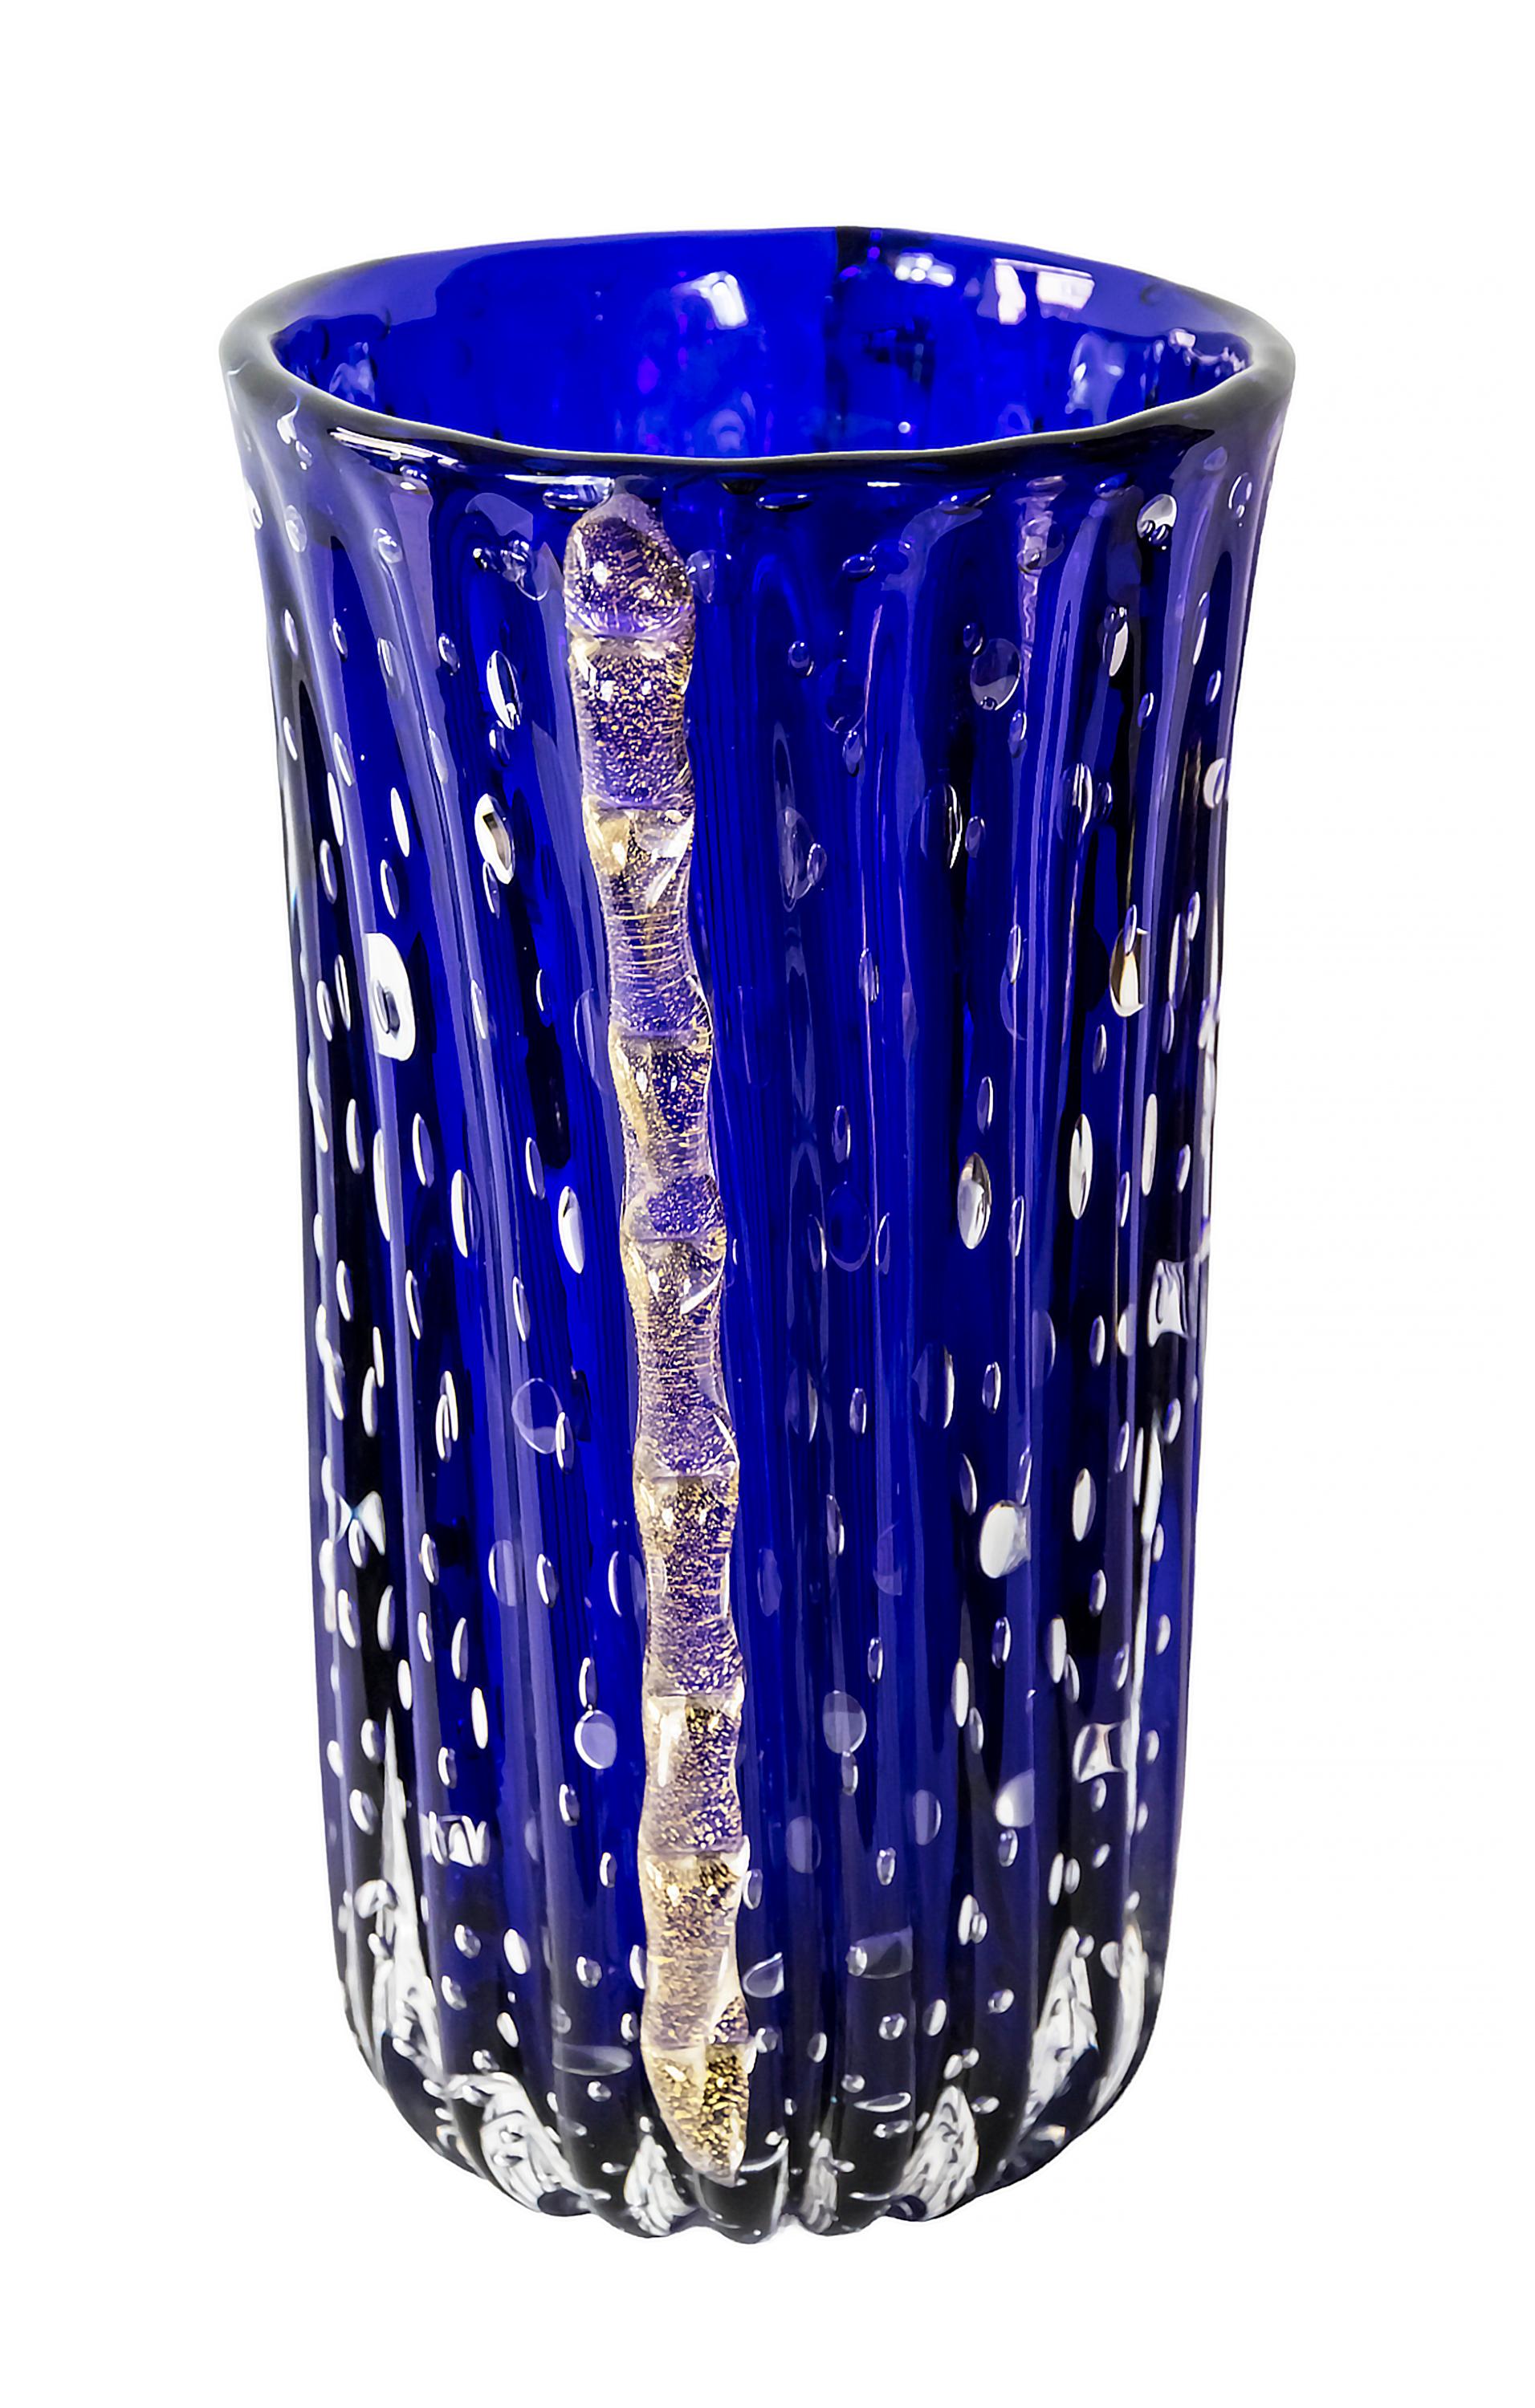 Vase italien en verre de Murano fait à la main vers les années 1970.
Le verre est d'un bleu profond avec des bulles d'air à l'intérieur.
Les côtés sont décorés de détails en verre incrusté de poussière d'or.